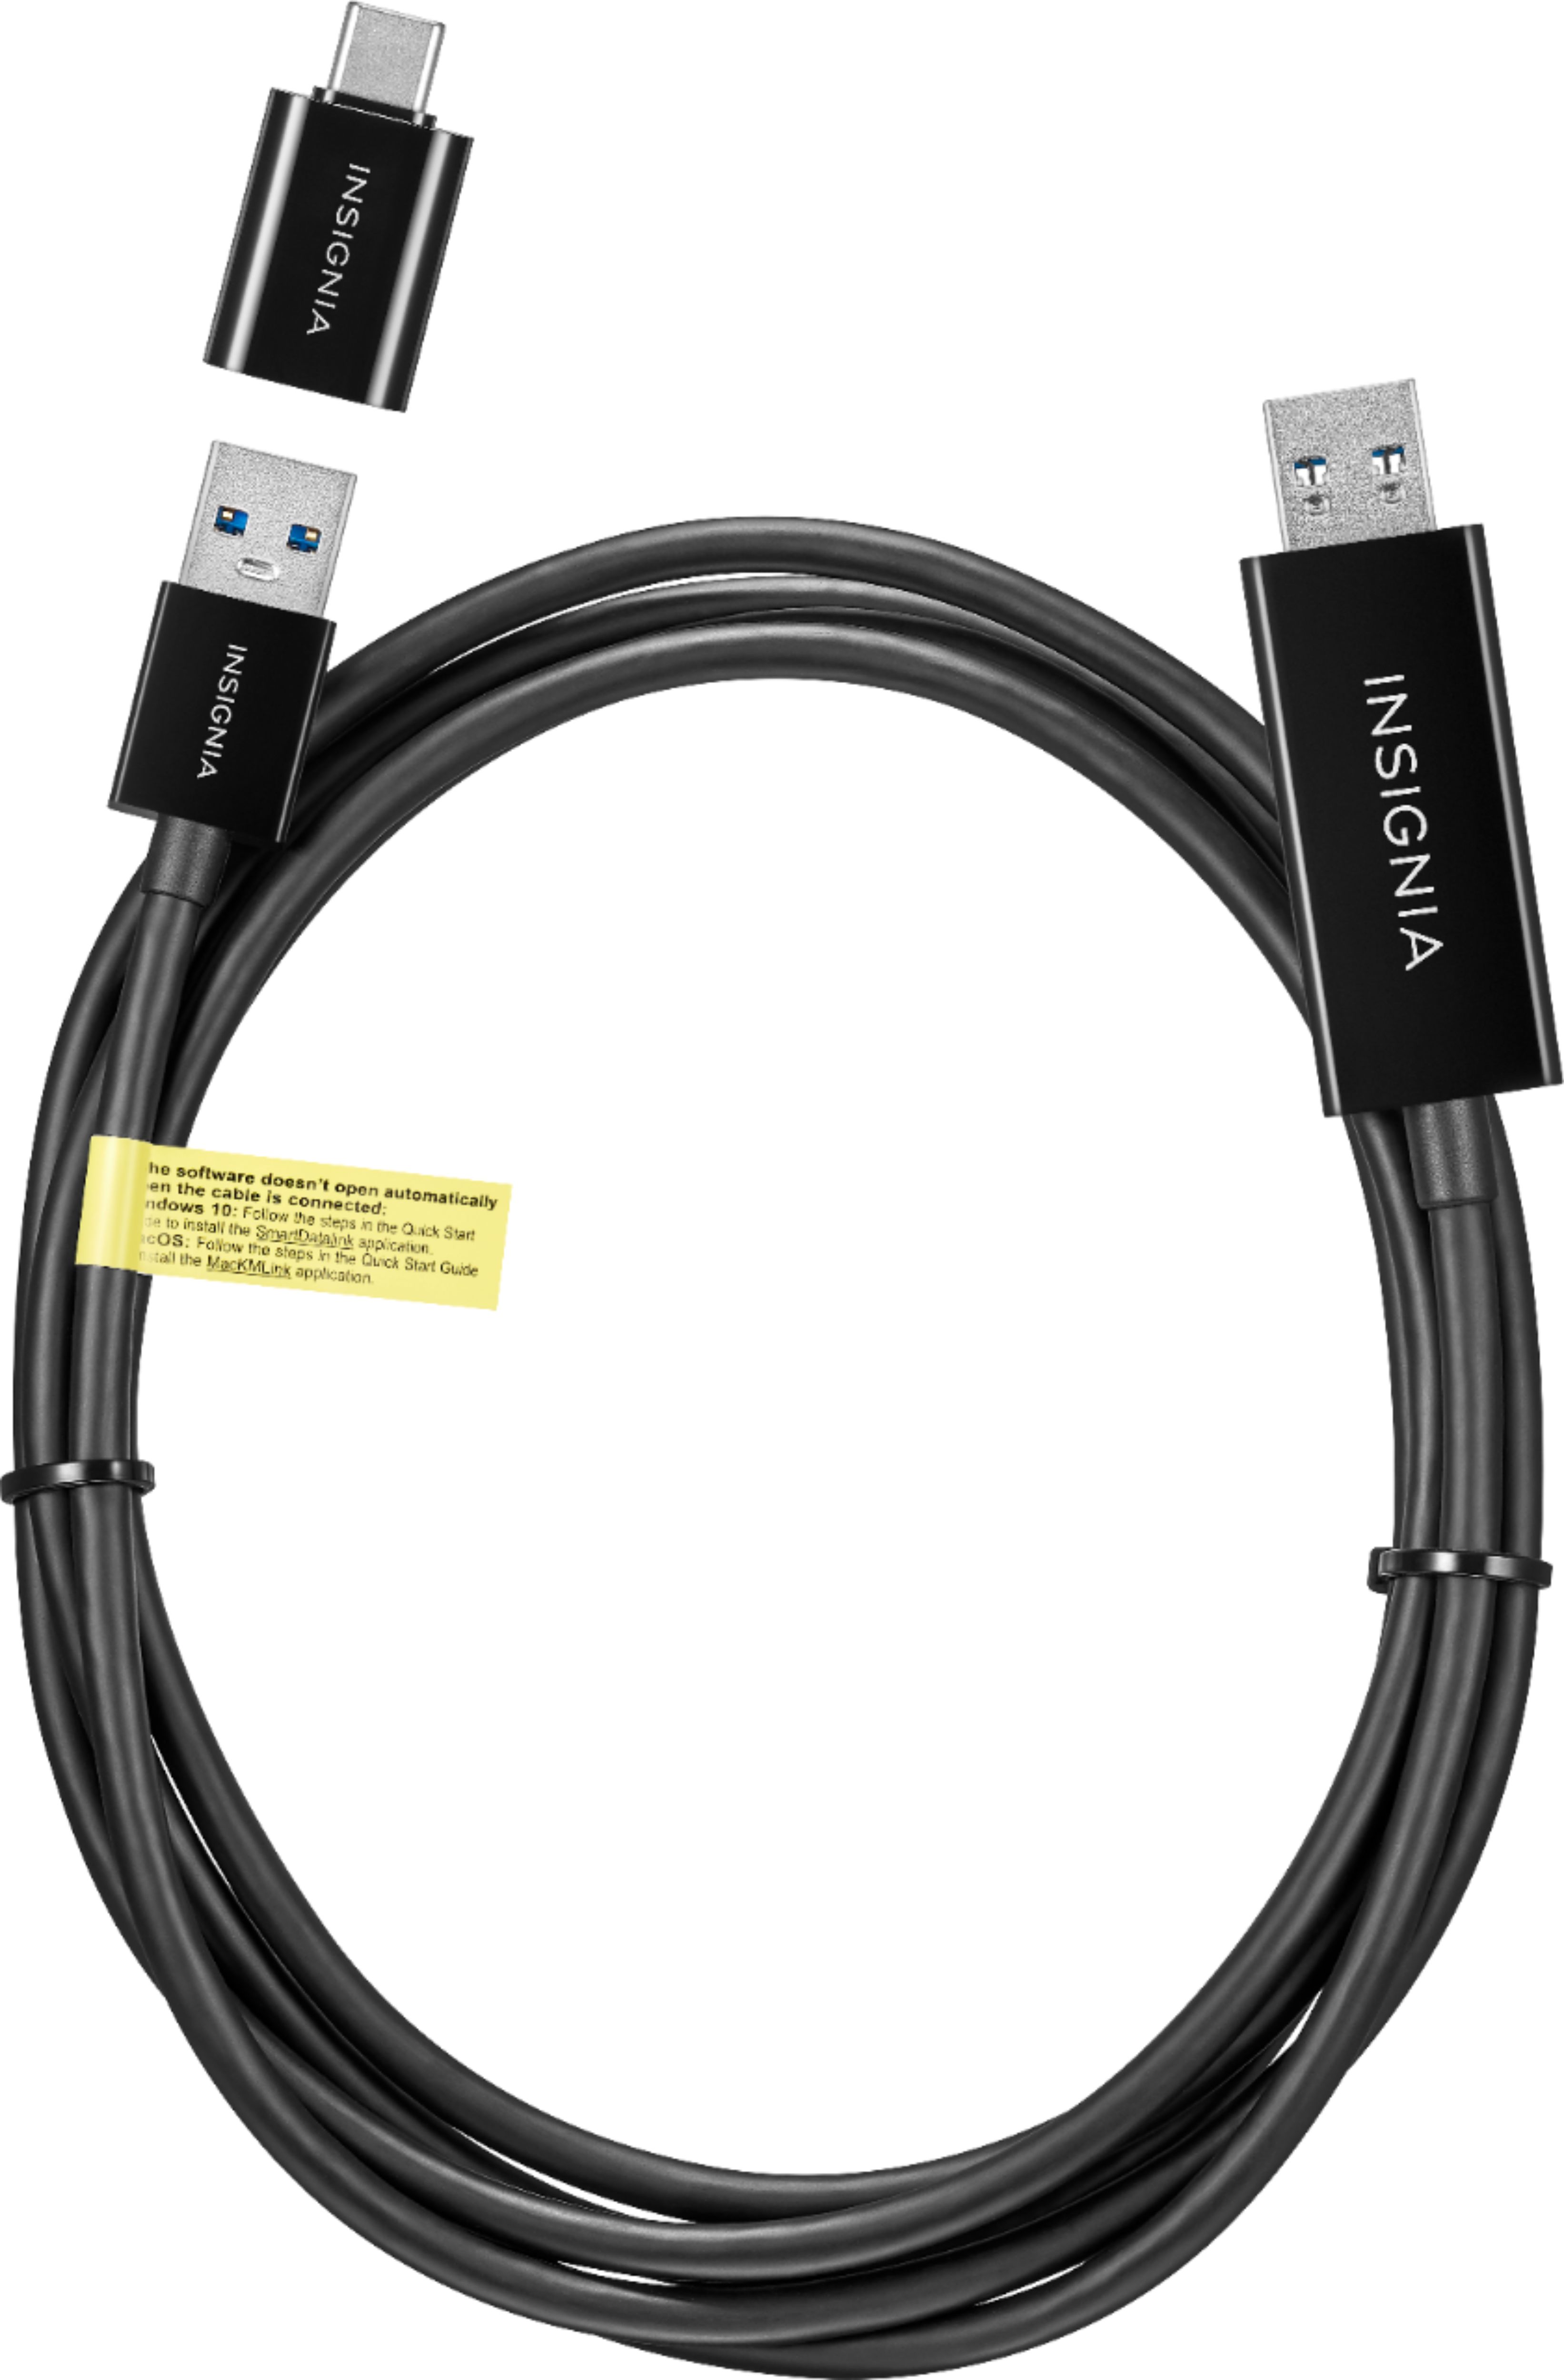 Insignia - 6' USB 3.0 File Transfer Cable - Black